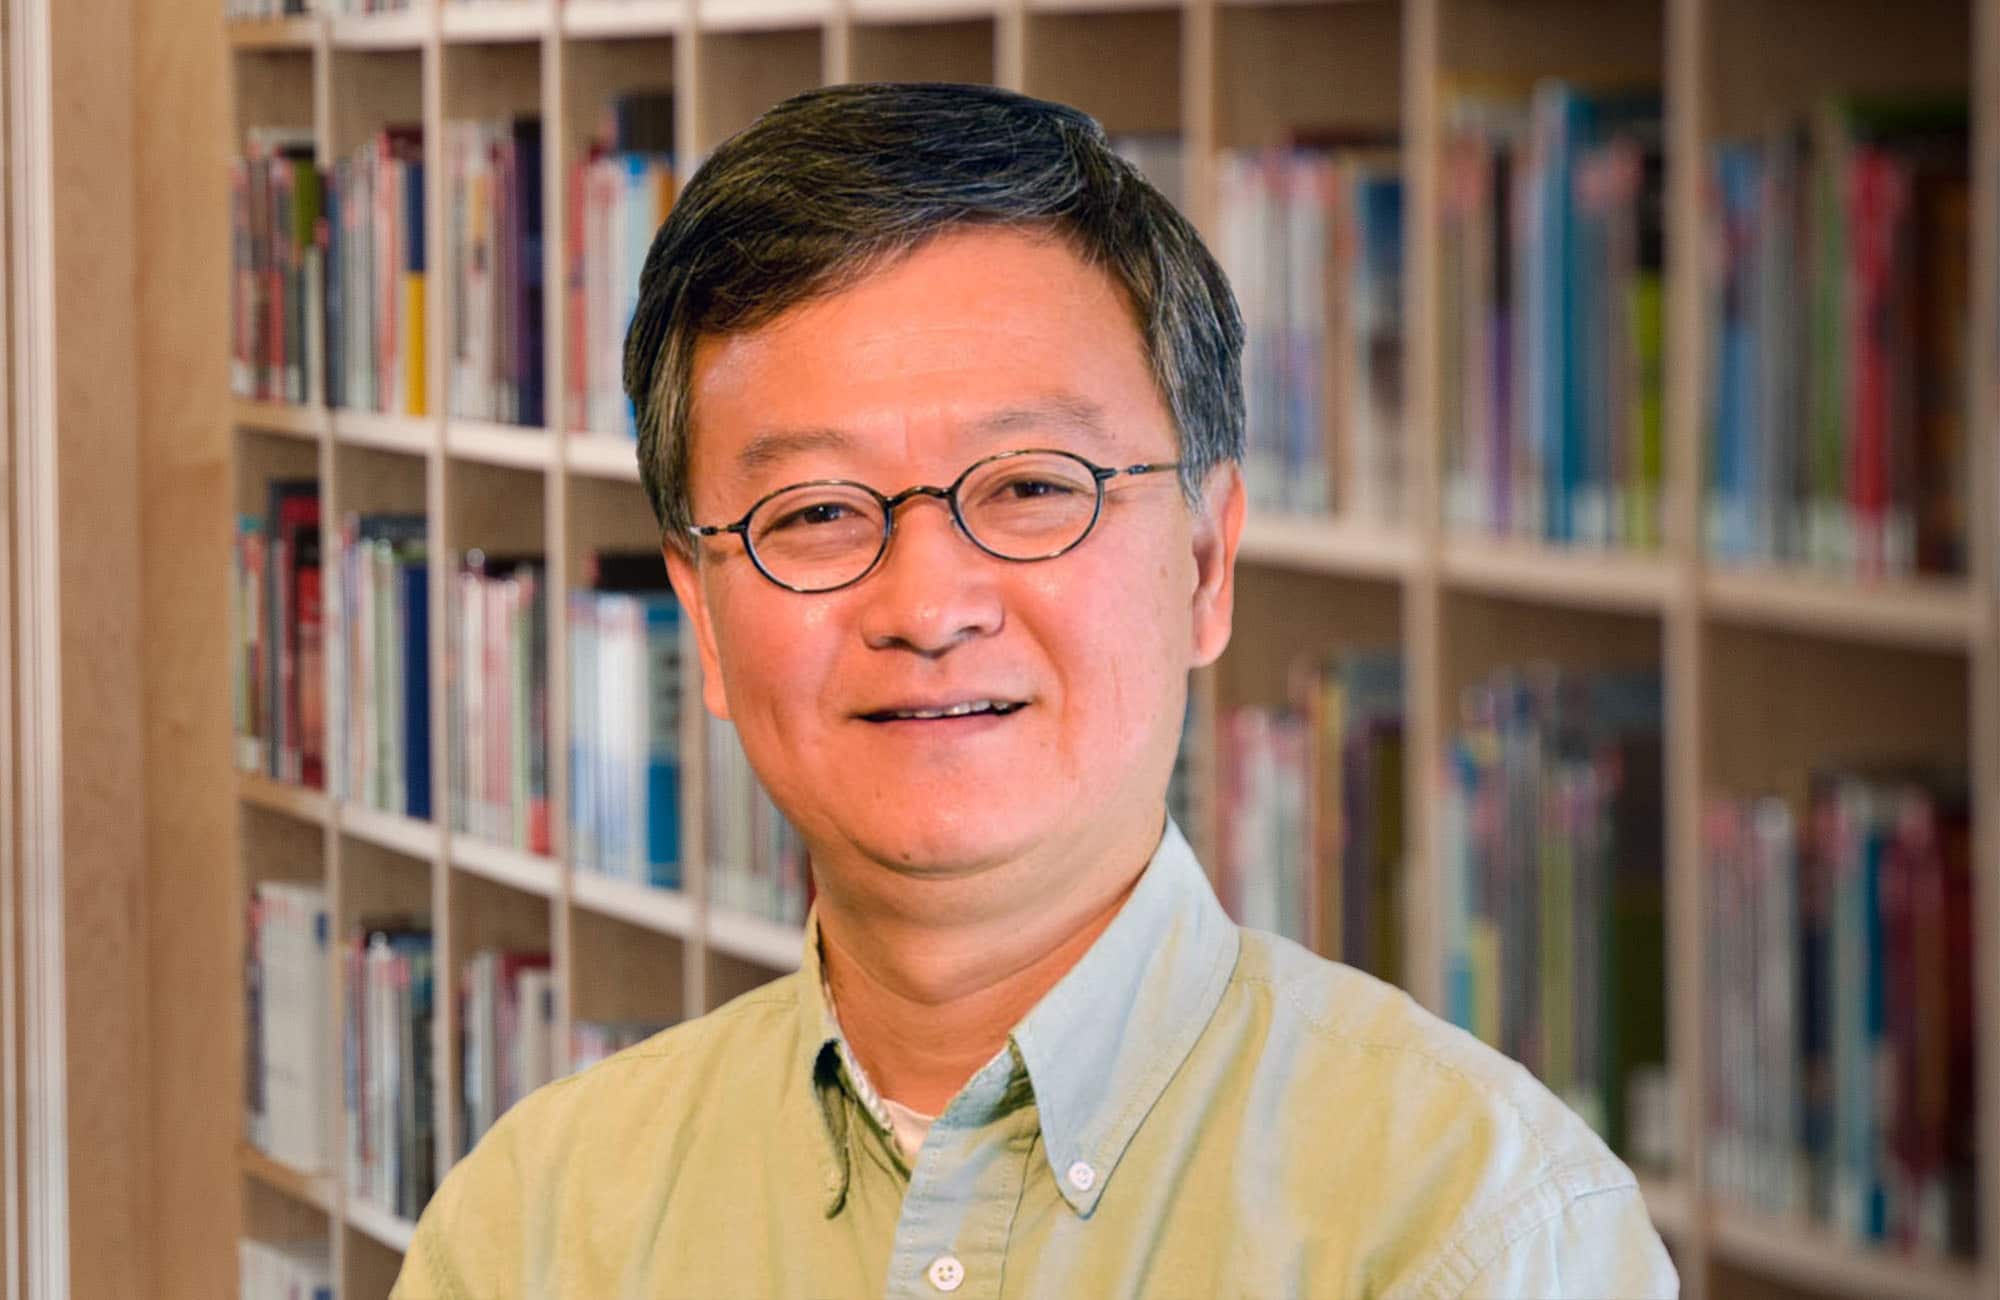 Chow Receives 2020 IEEE IES Achievement Award